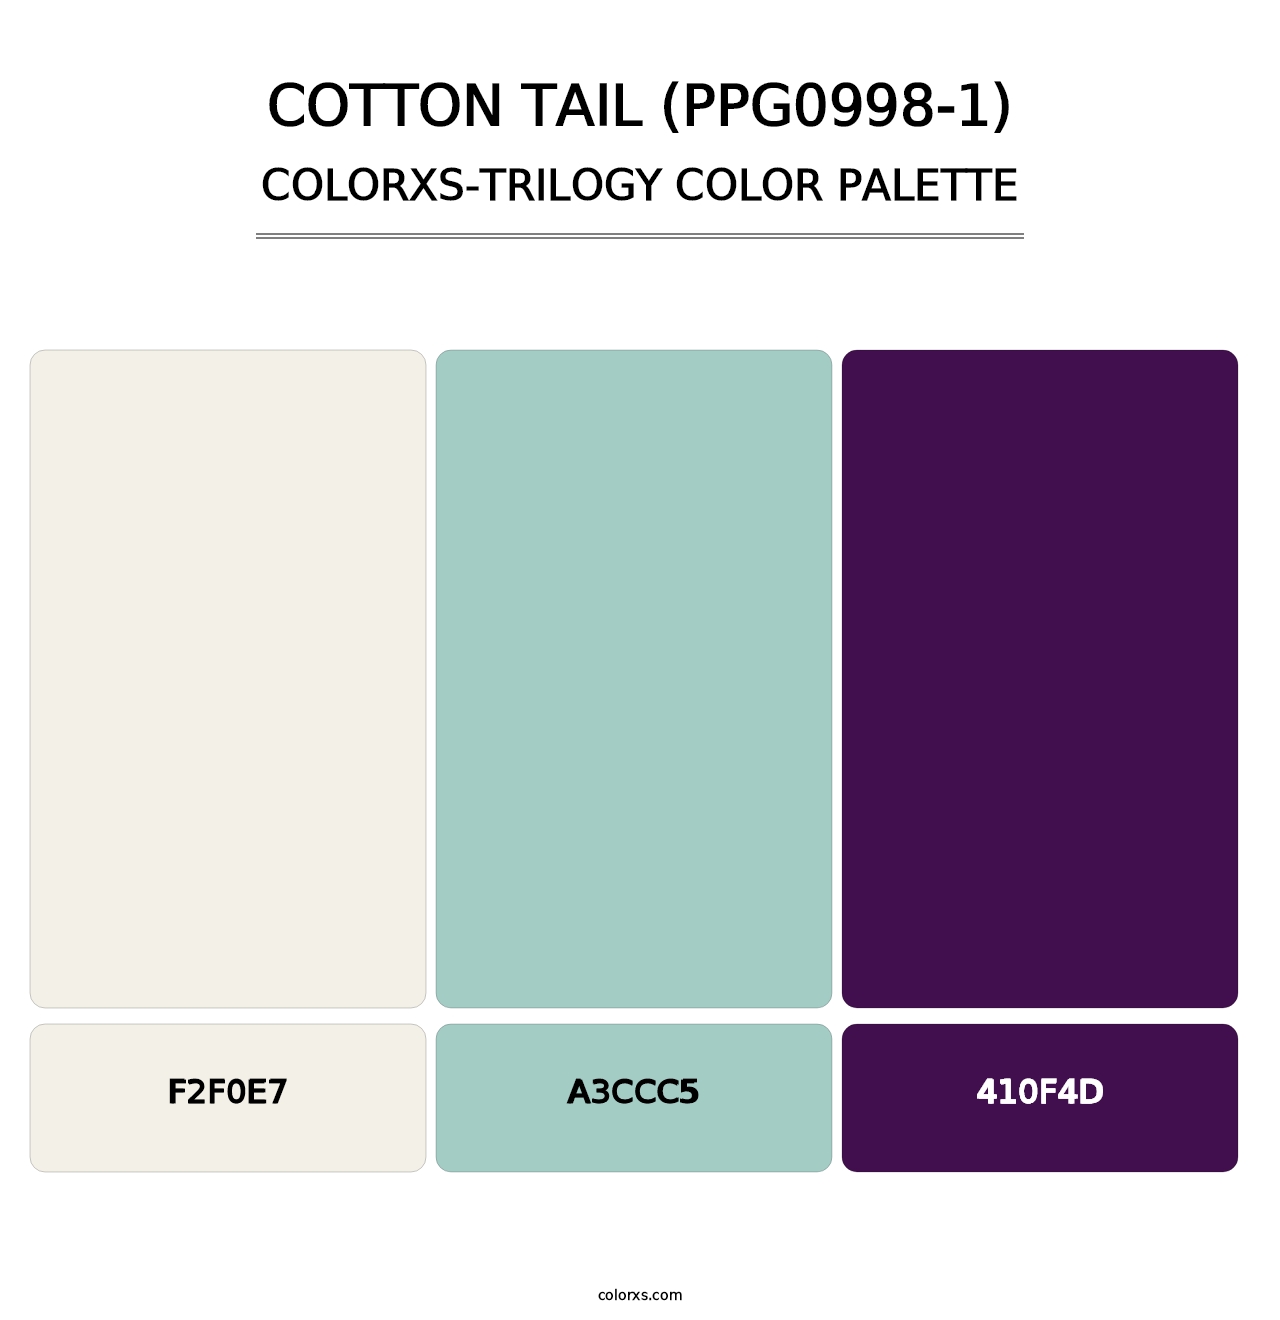 Cotton Tail (PPG0998-1) - Colorxs Trilogy Palette